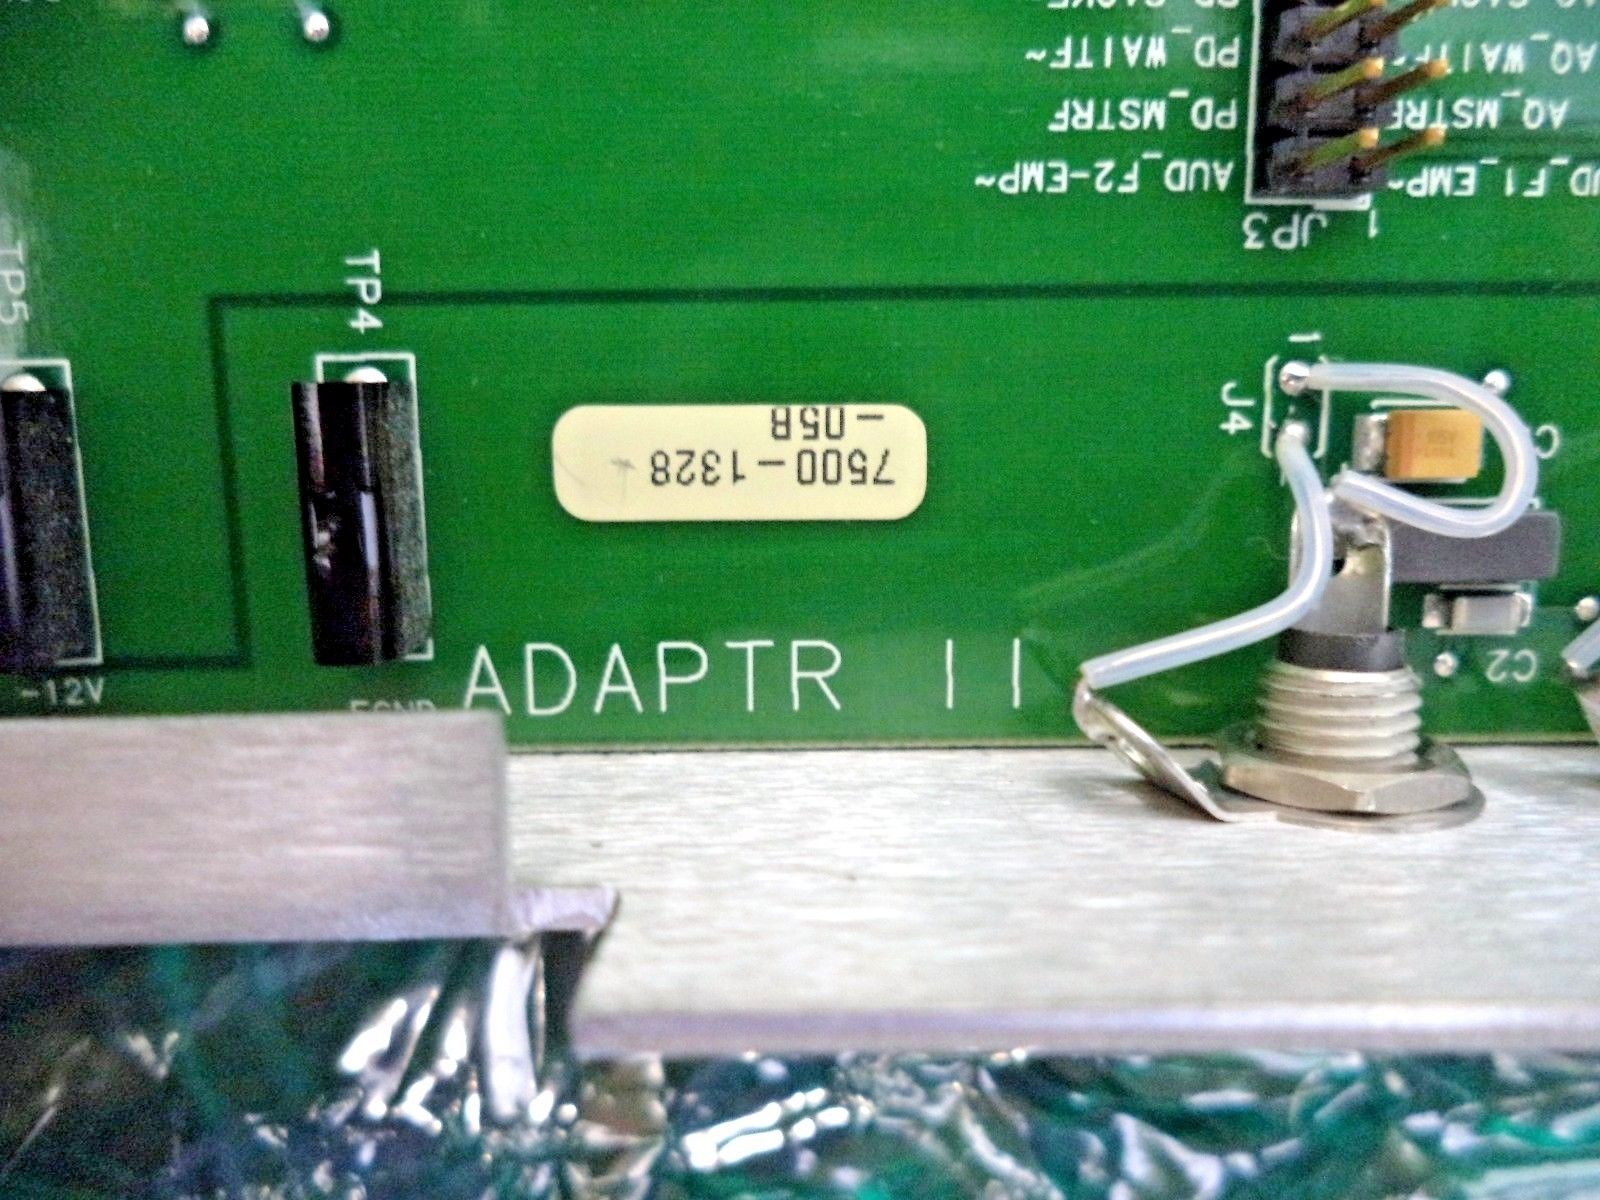 Philips (HP) ATL HDI 5000 Ultrasound Adapter II Board (PN: 7500-1328-05B)